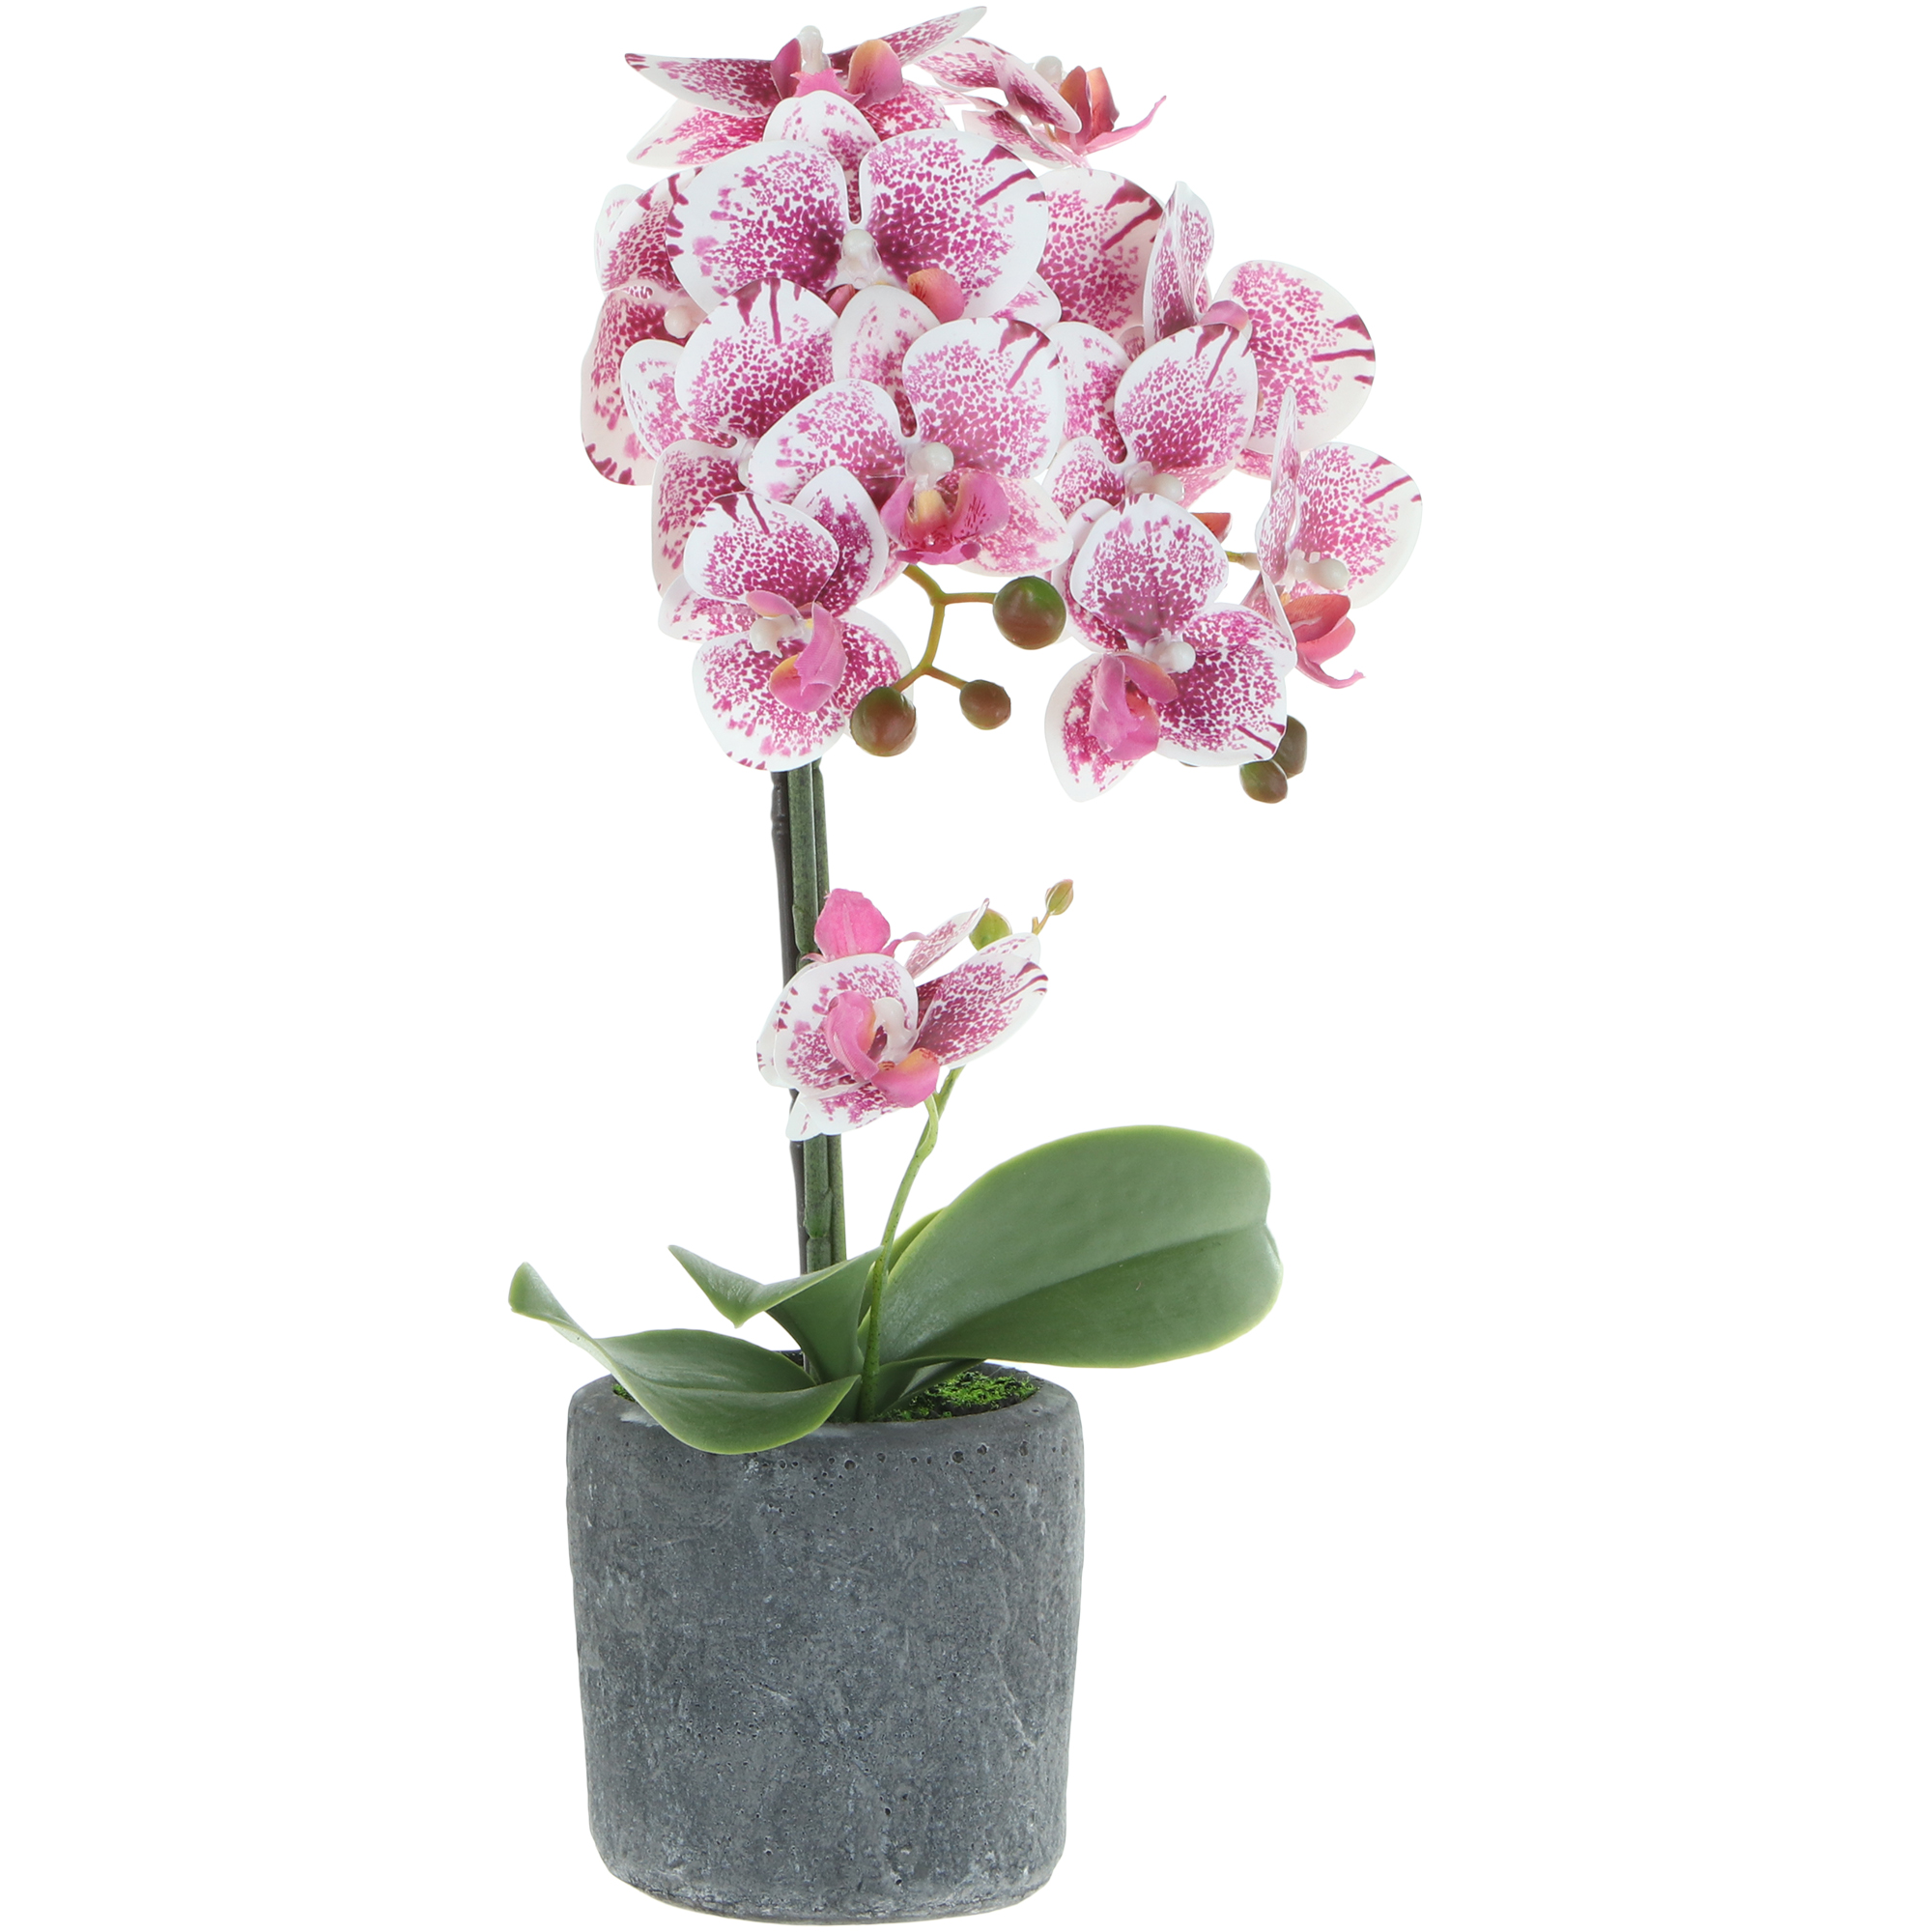 Цветок искусственный в горшке Fuzhou Light орхидея бело-розовая, 3 цвета 42 см ок искусственный fuzhou light орхидея белая в горшке 40 см